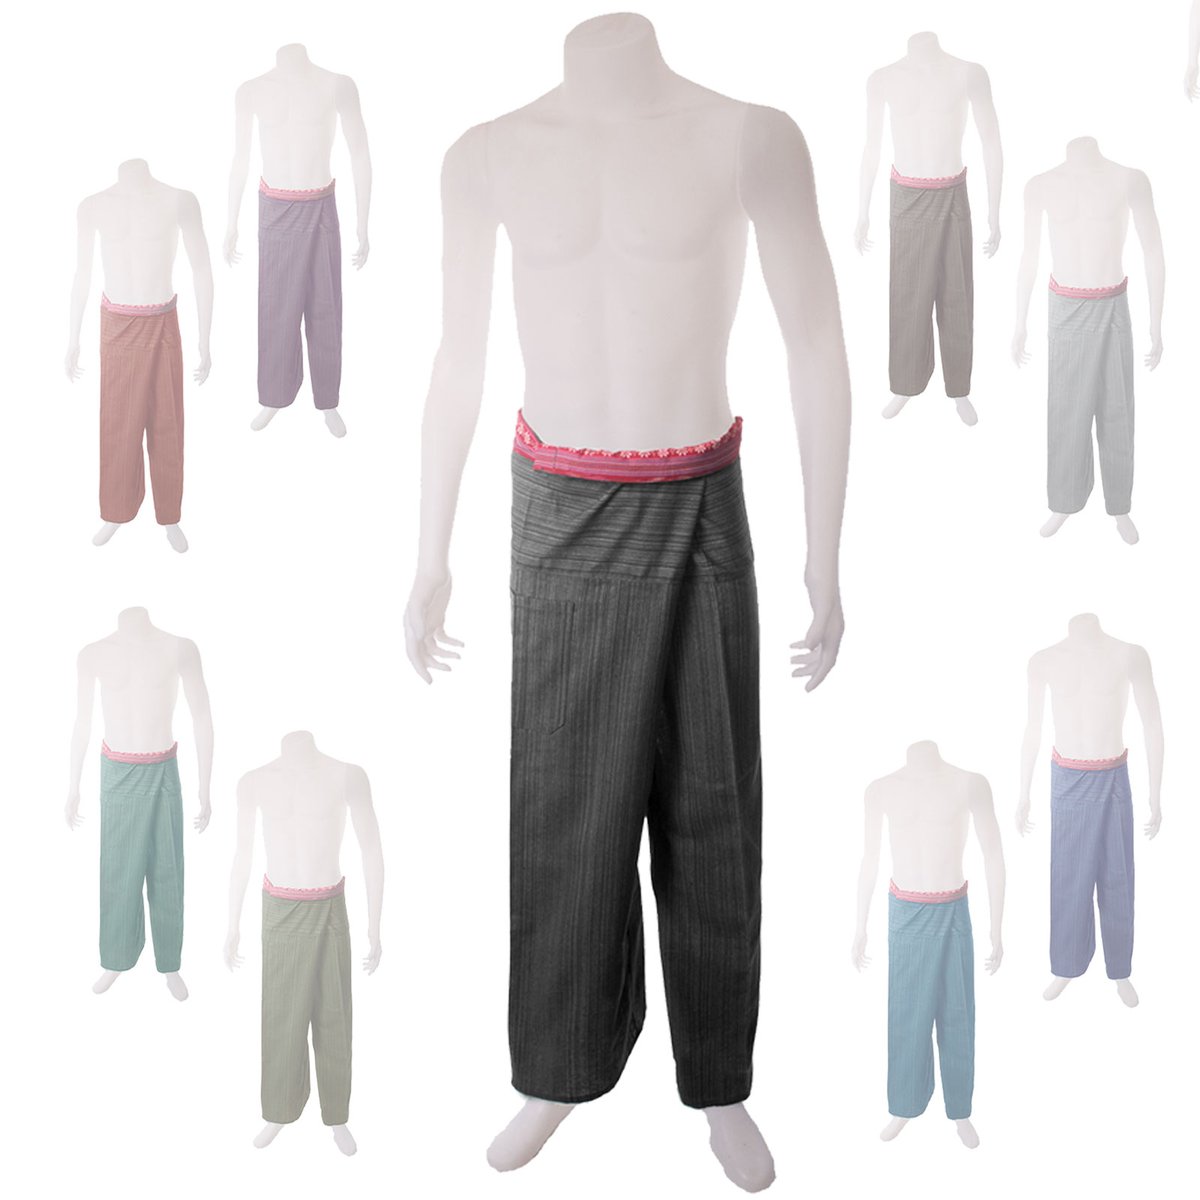 Thai Clothing Direct — Medium Weight Pin Stripe Cotton Thai Fisherman Pants